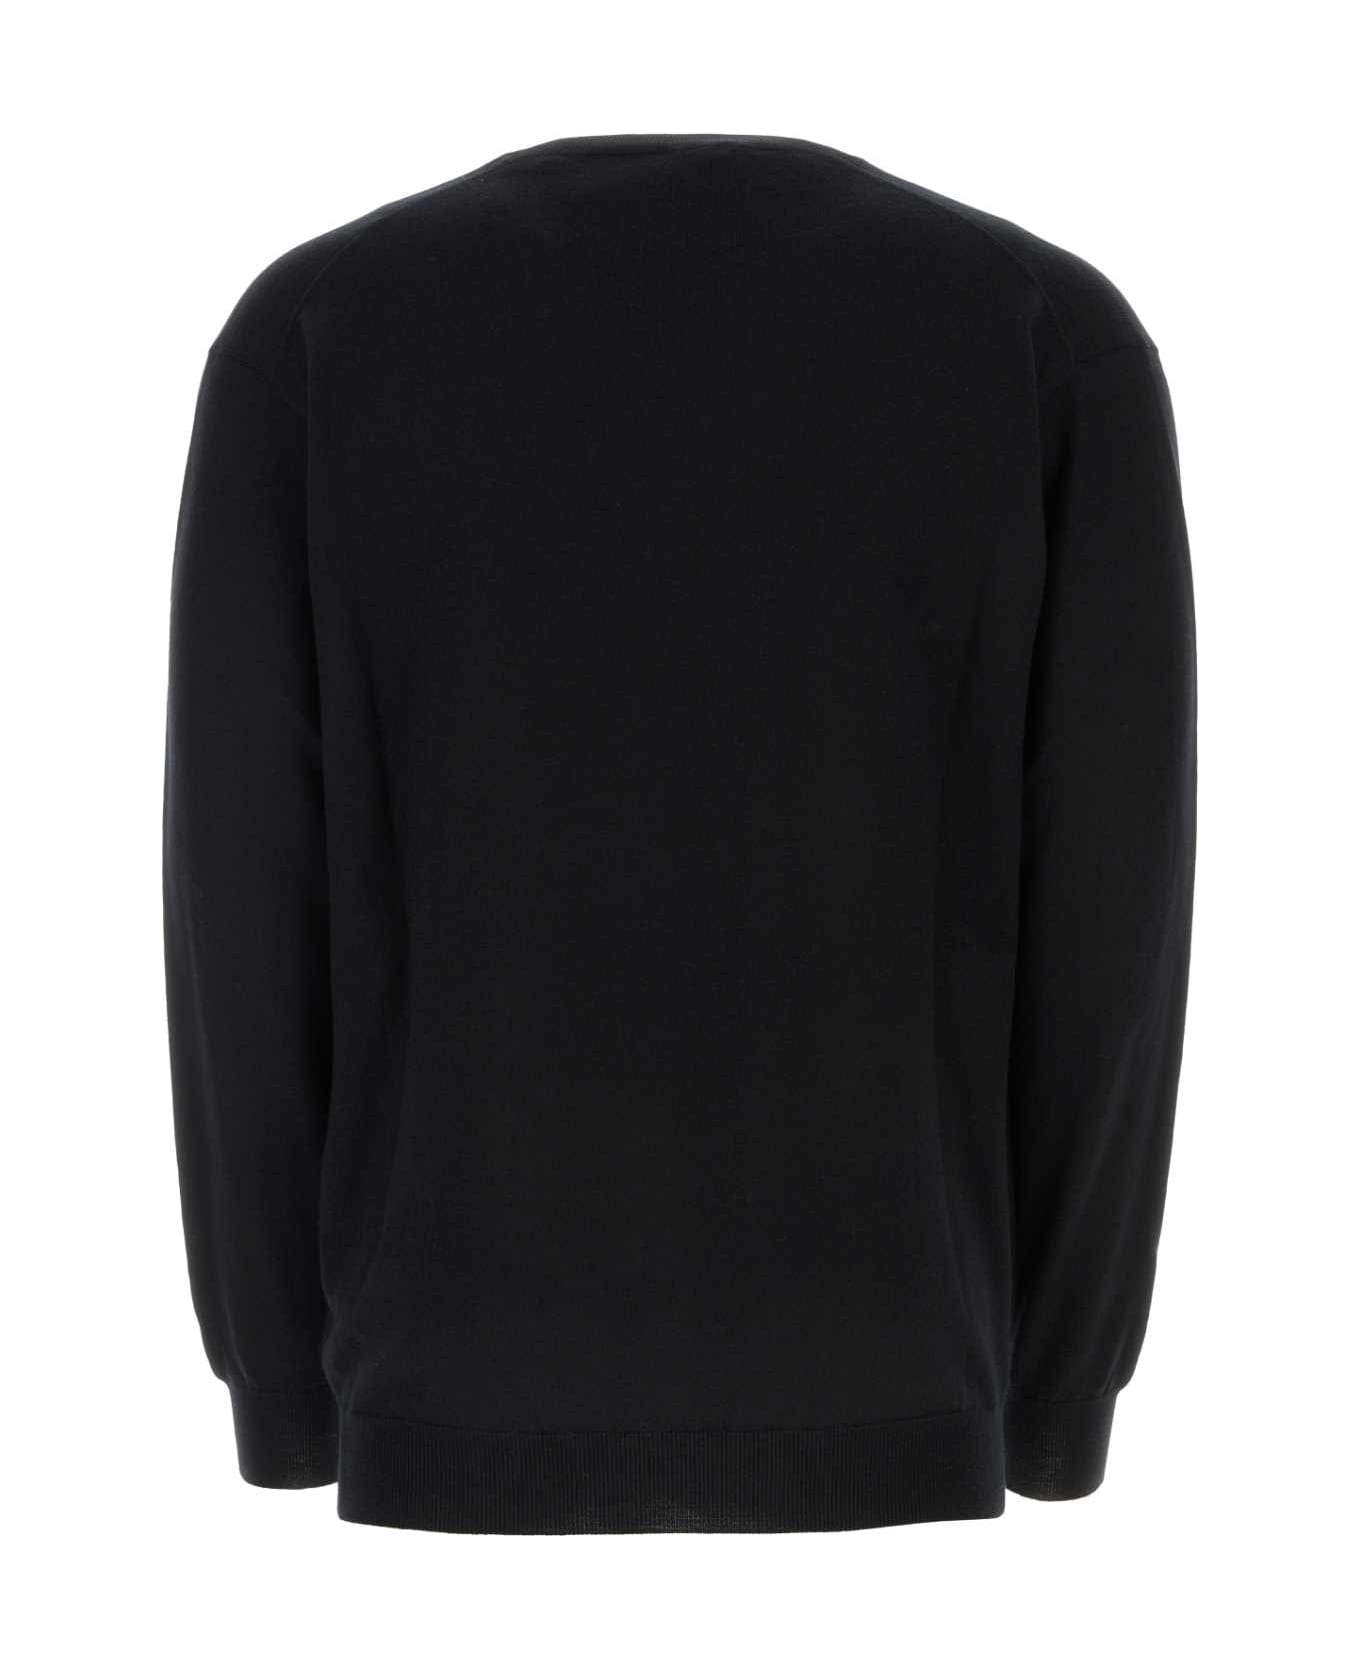 Prada Black Cashmere Sweater - NERO